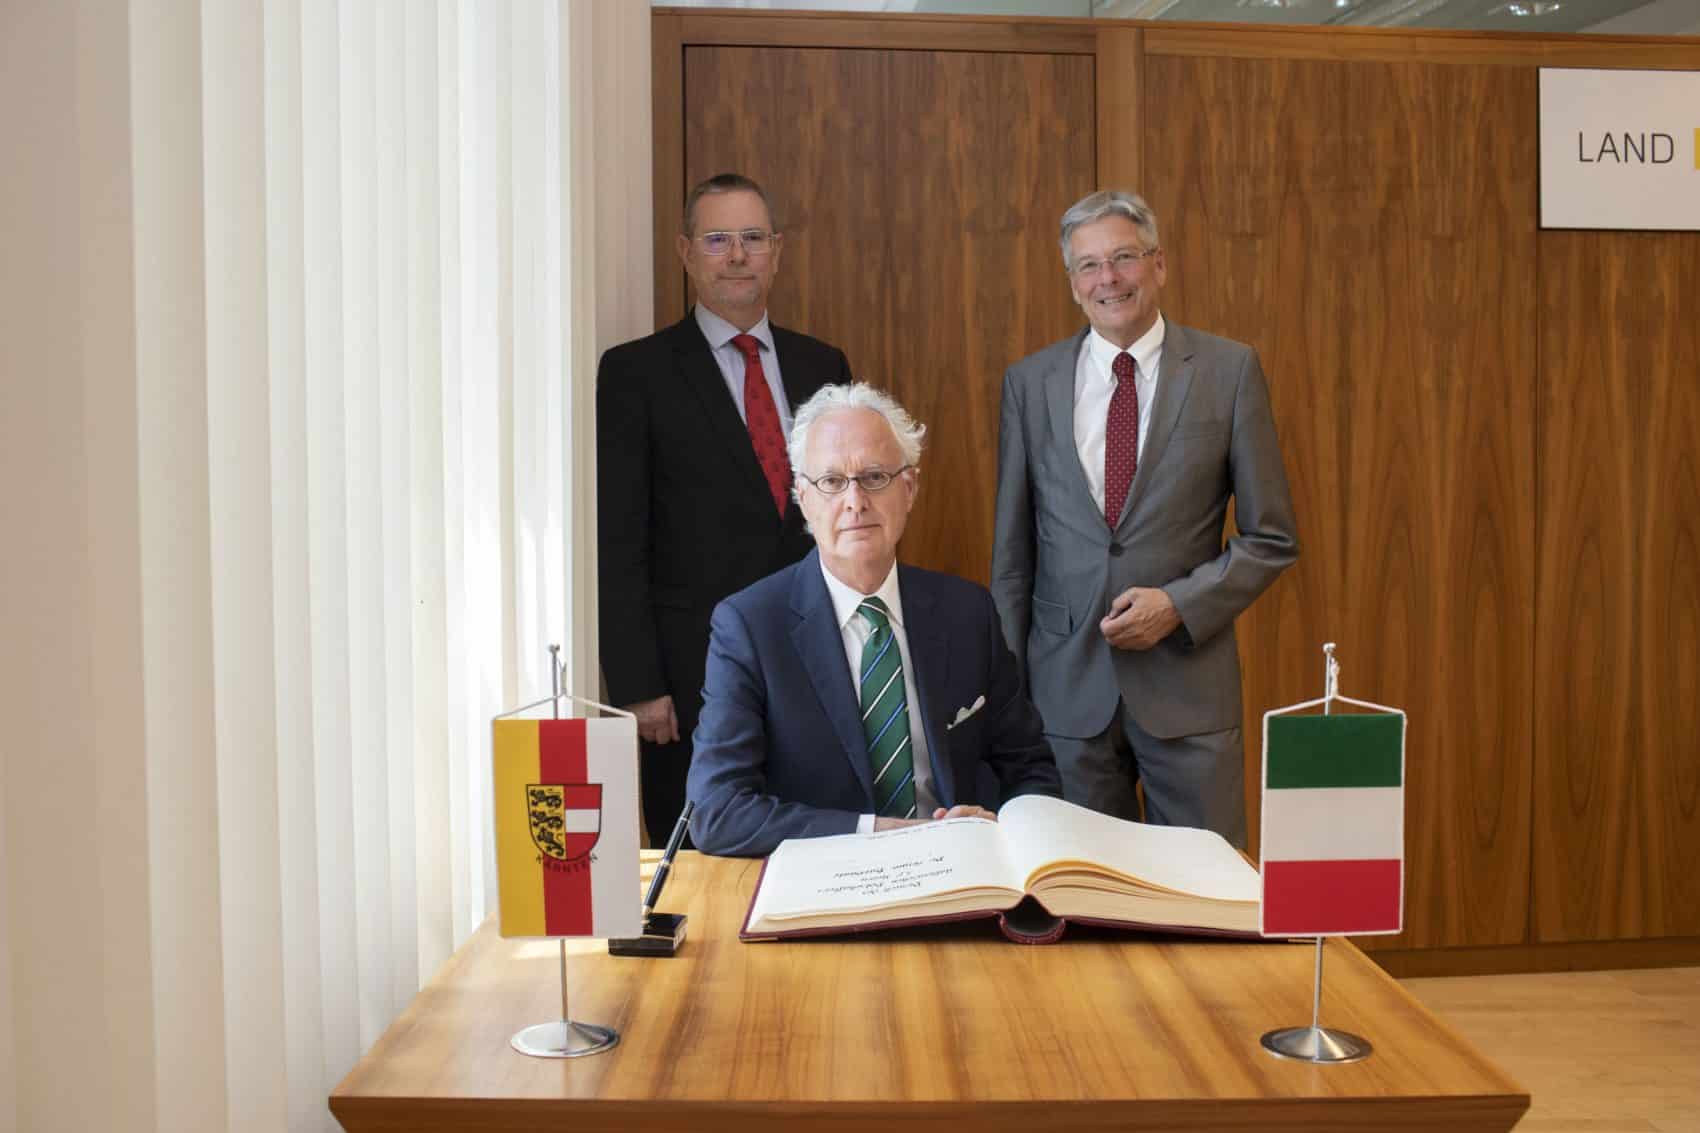 Botschafter Sergio Barbanti, Landesamtsdir. Dieter Platzer, und LH Peter Kaiser.